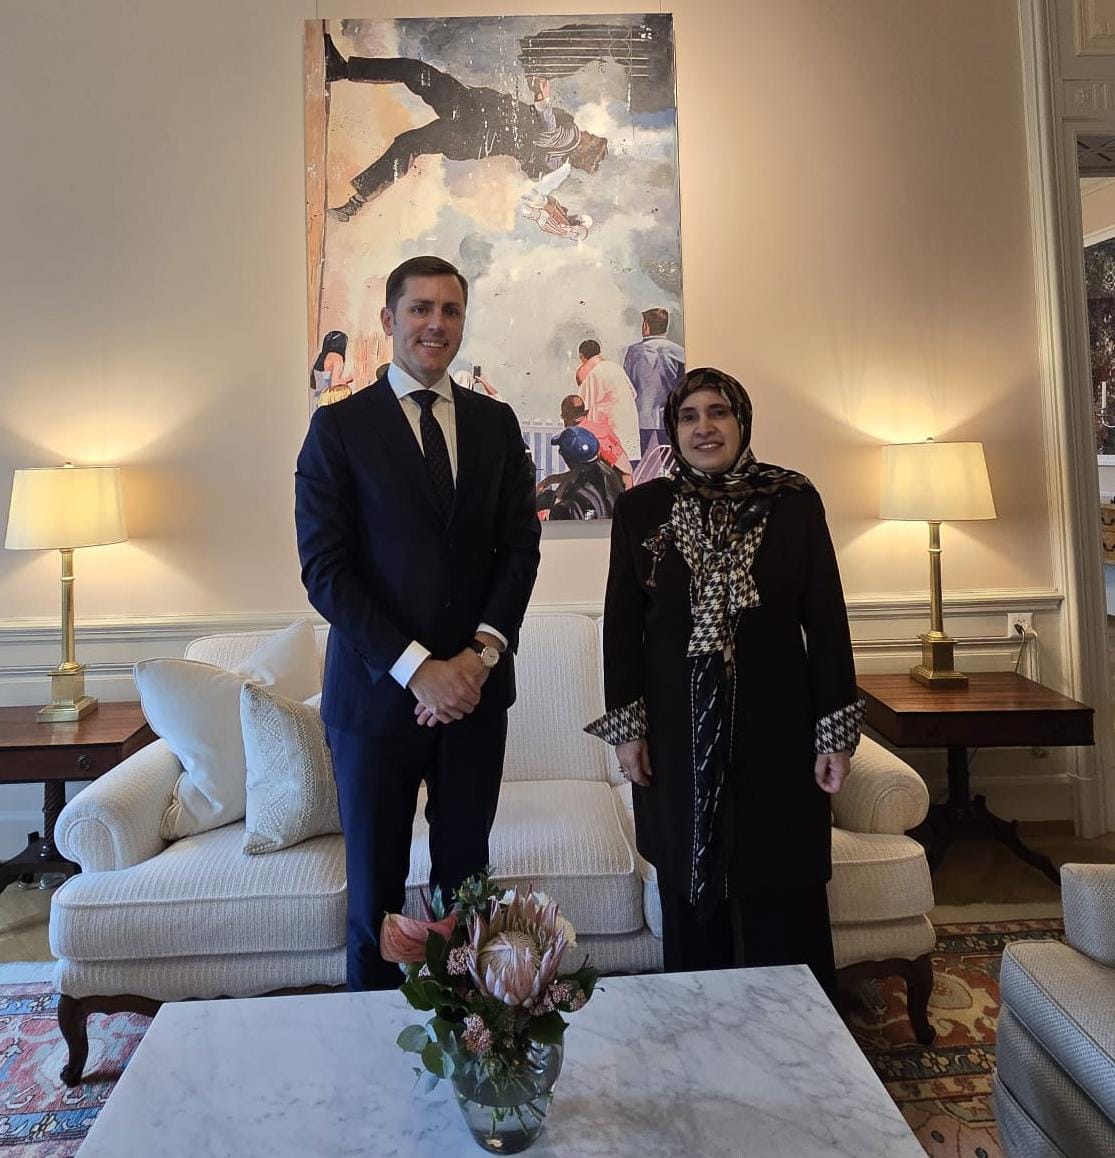 Ihre Exzellenz Dr. Hissa Abdullah Al Otaiba, Botschafterin der🇦🇪 bei der🇨🇭und dem Fürstentum Liechtenstein, traf sich mit S.E. Scott C. Miller, Botschafter der Vereinigten Staaten von Amerika in Bern. Während des Treffens überprüften sie die bilateralen Beziehungen zwischen